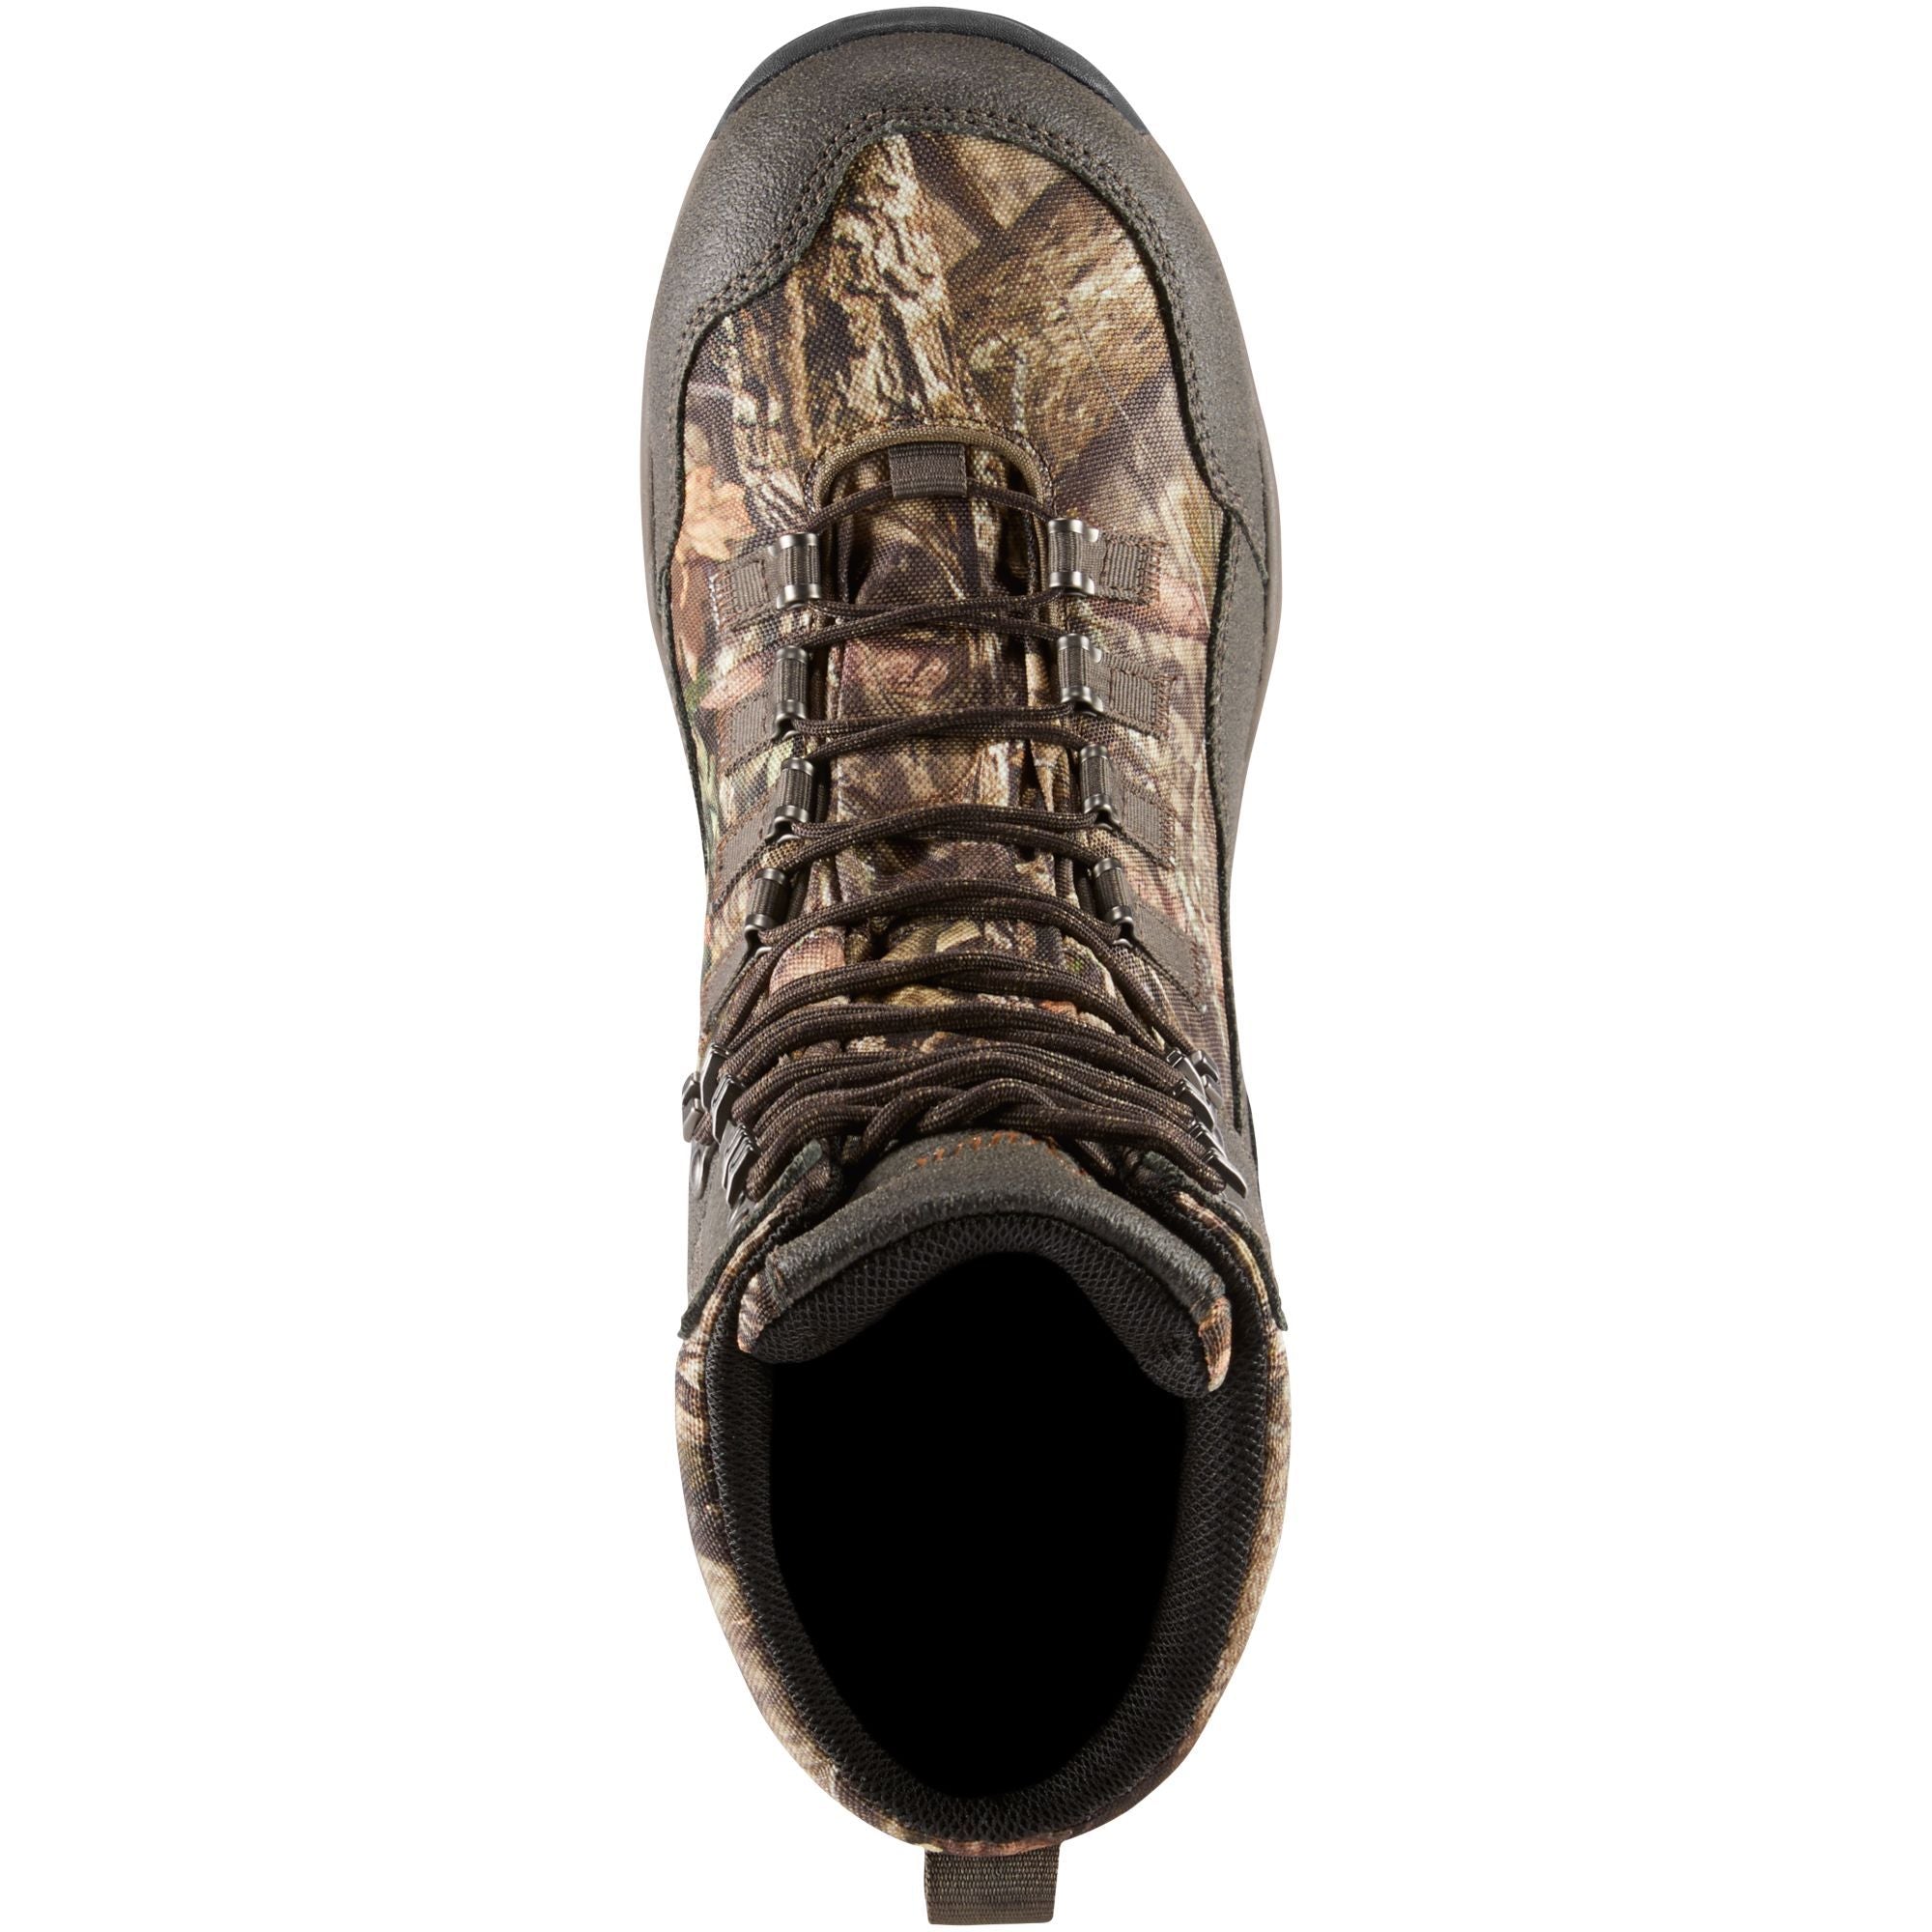 Danner Men's Vital 8" 800G Insulated WP Hunt Boot - Mossy Oak - 41555  - Overlook Boots